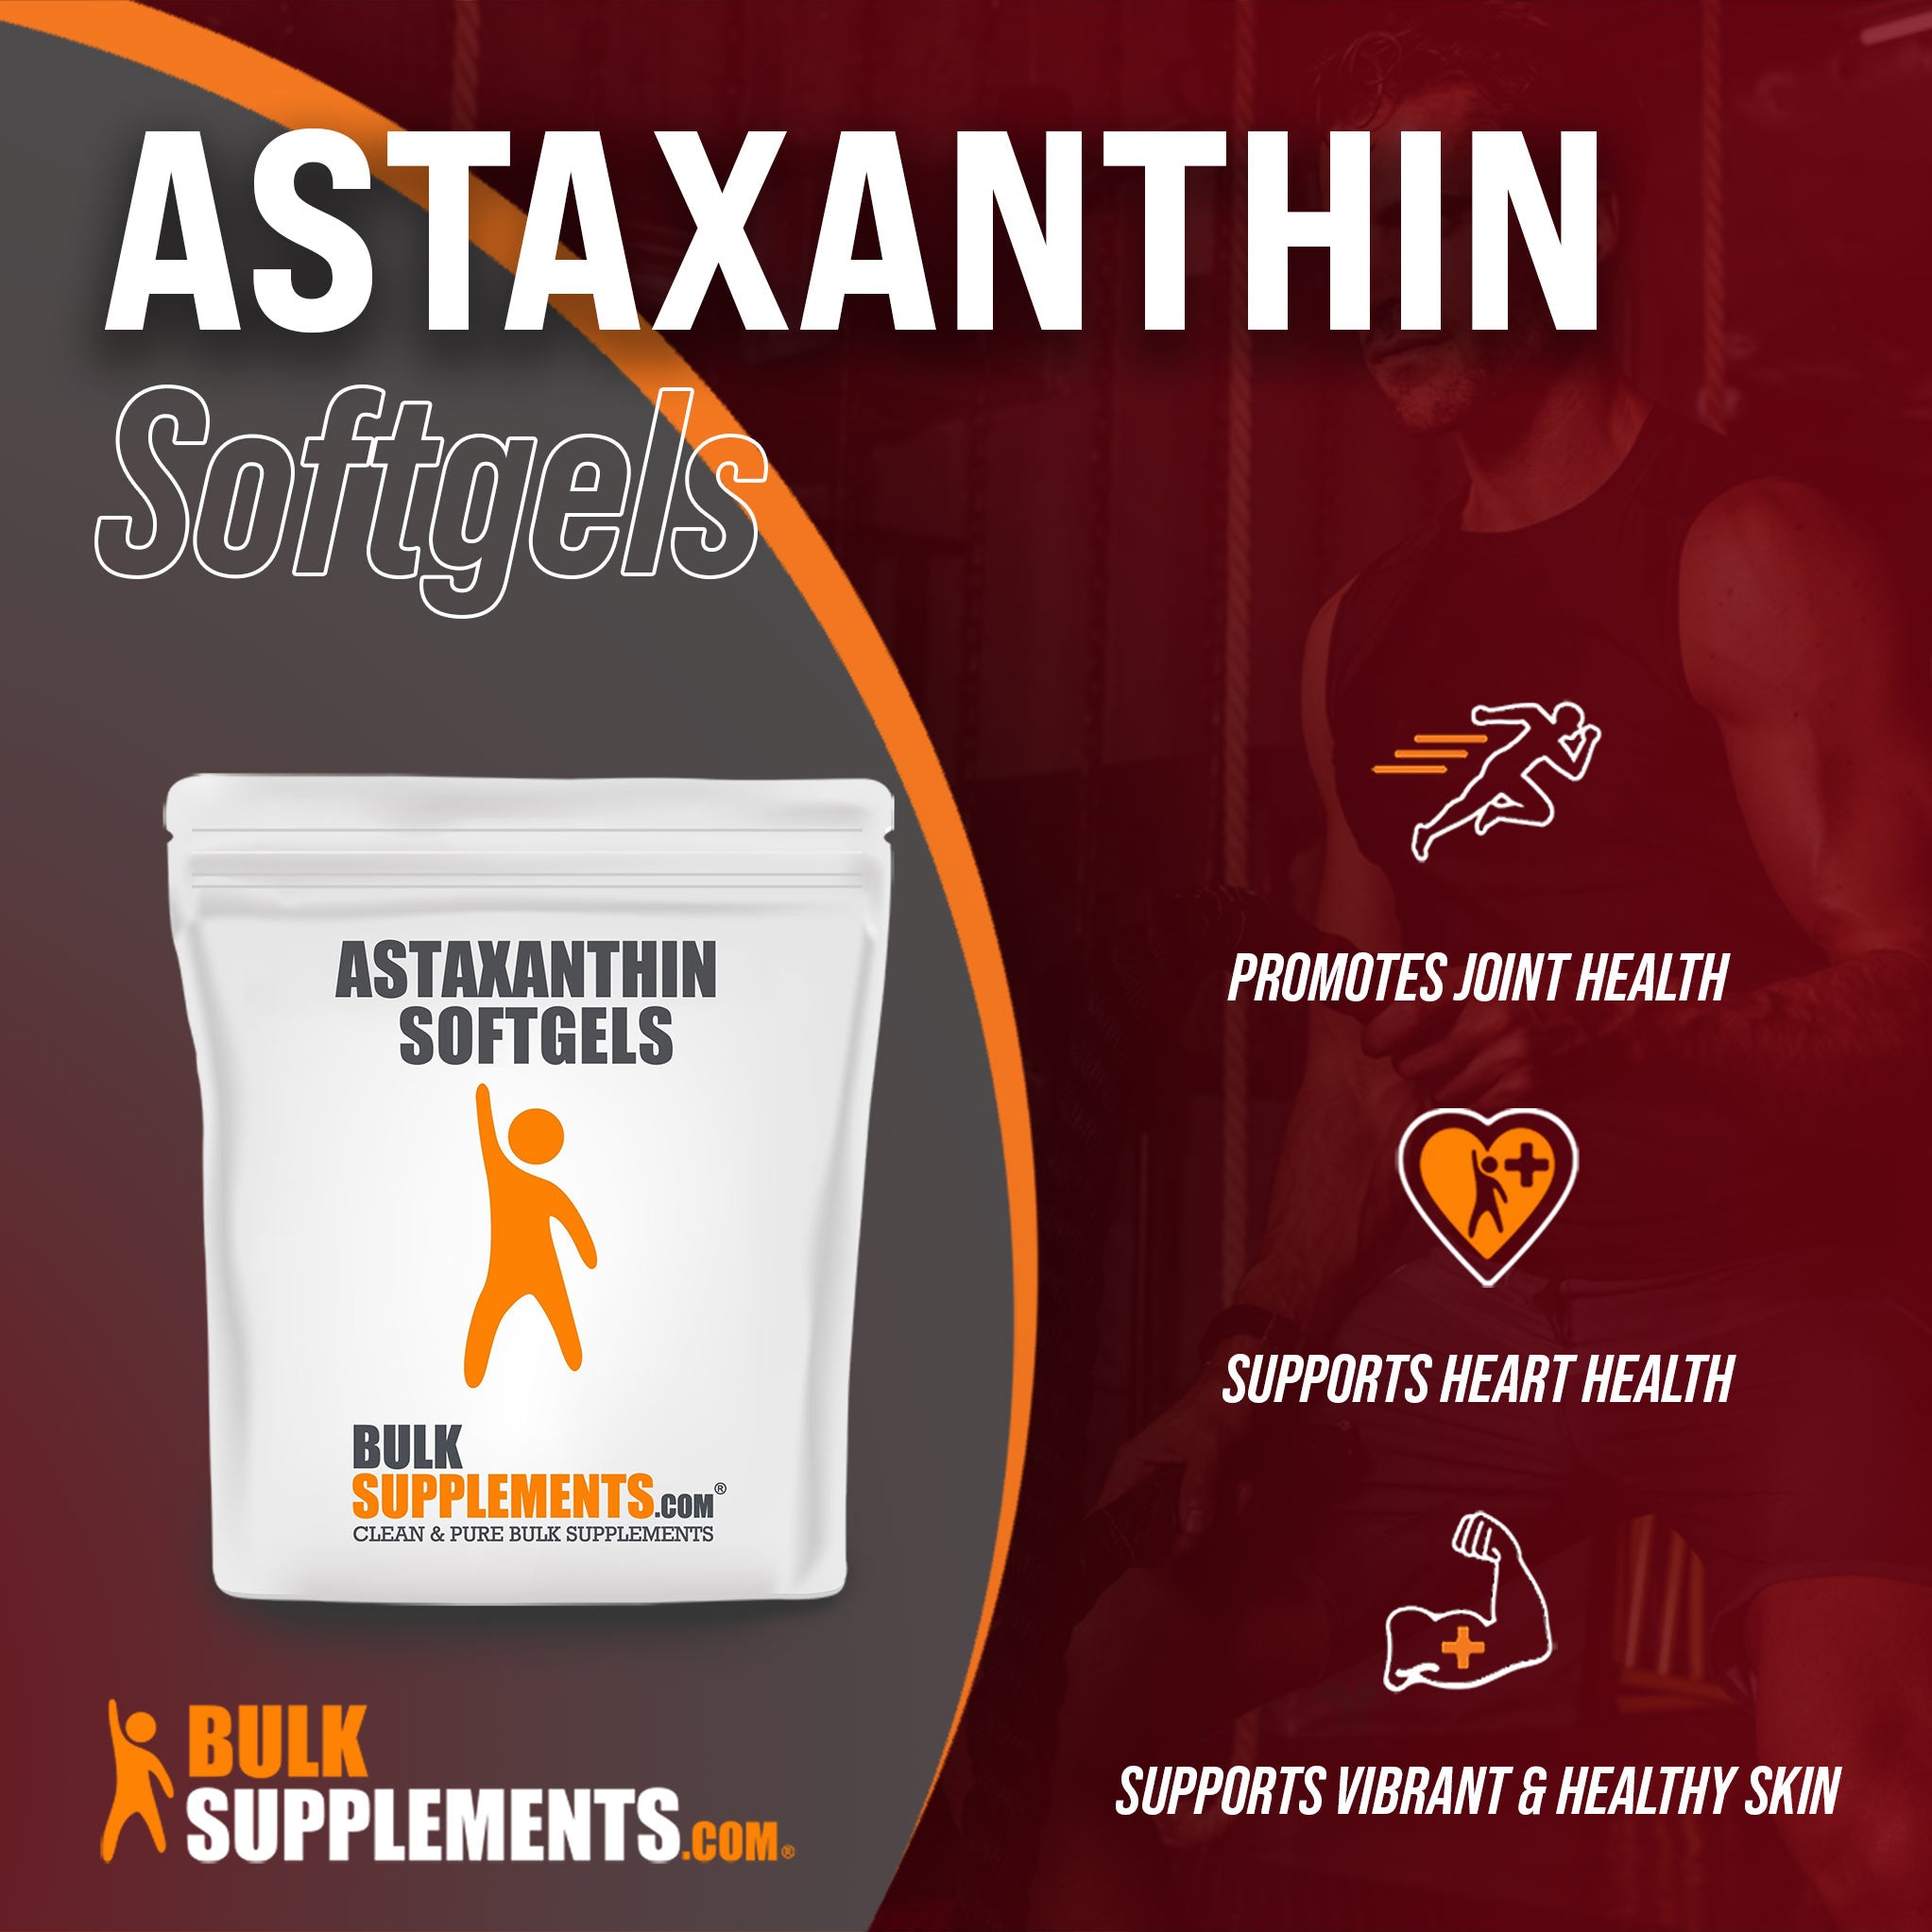 astaxanthin supplements	